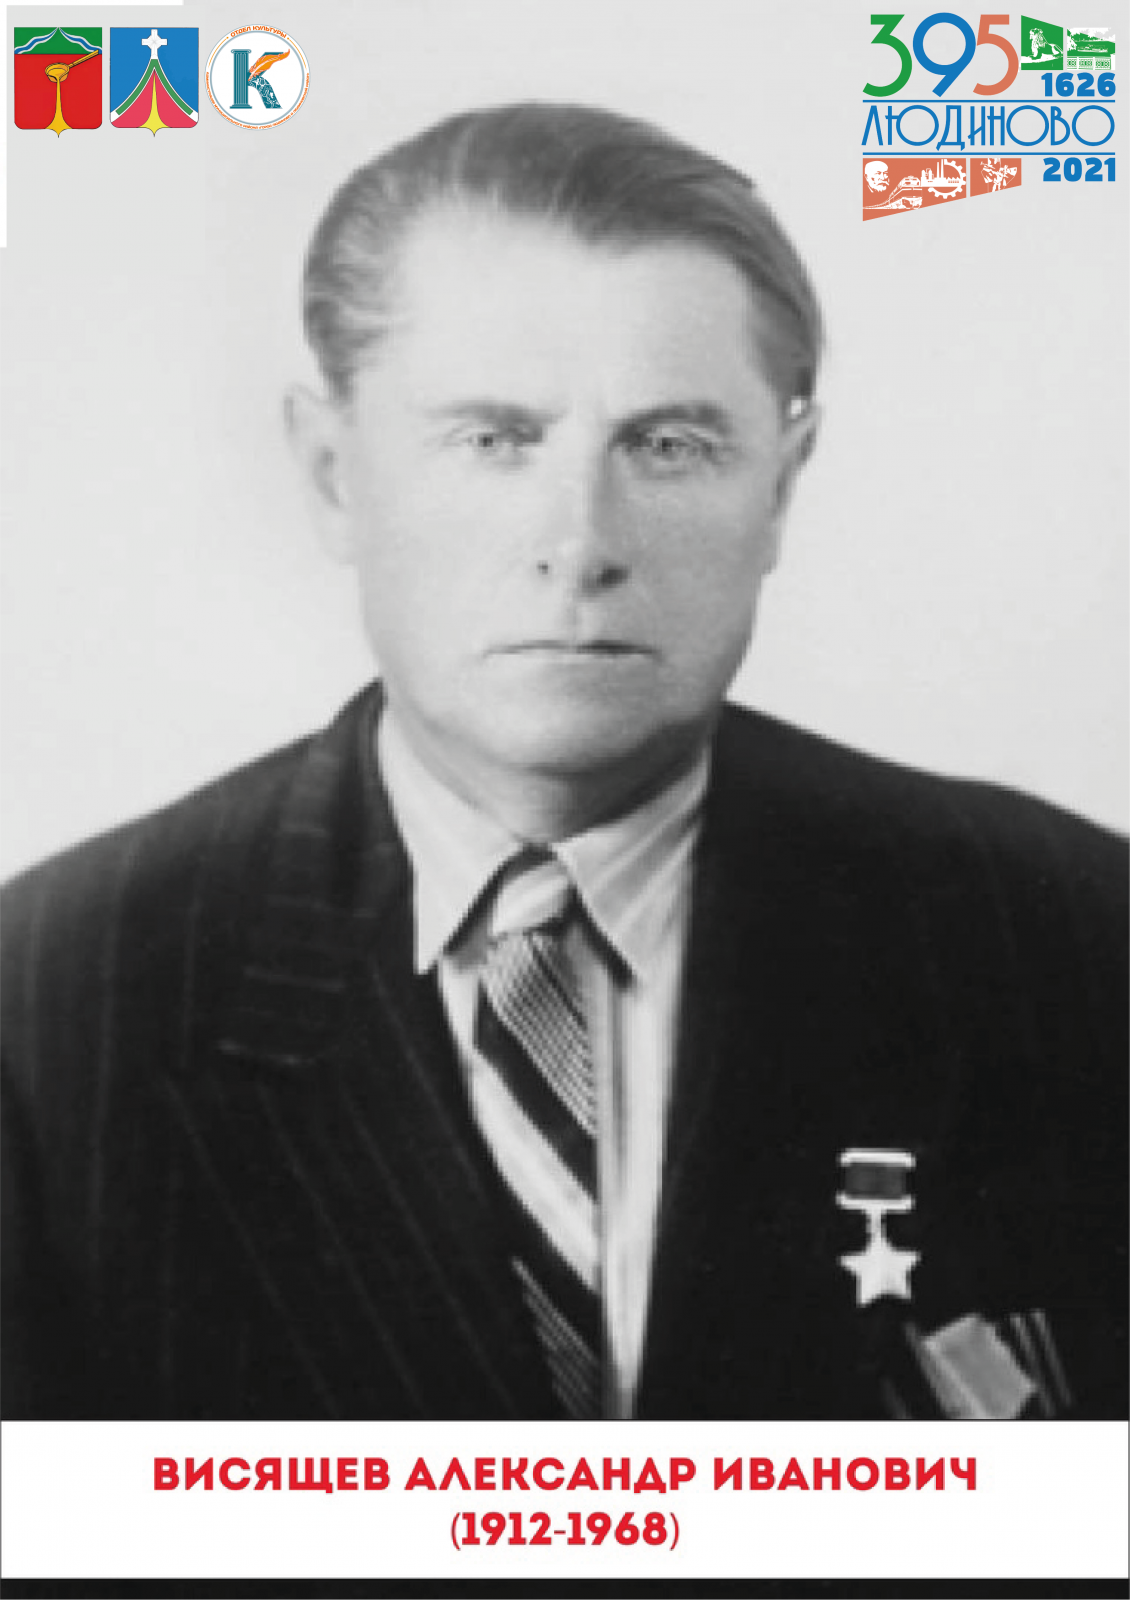 Александр Иванович Висящев — советский военный, Герой Советского Союза